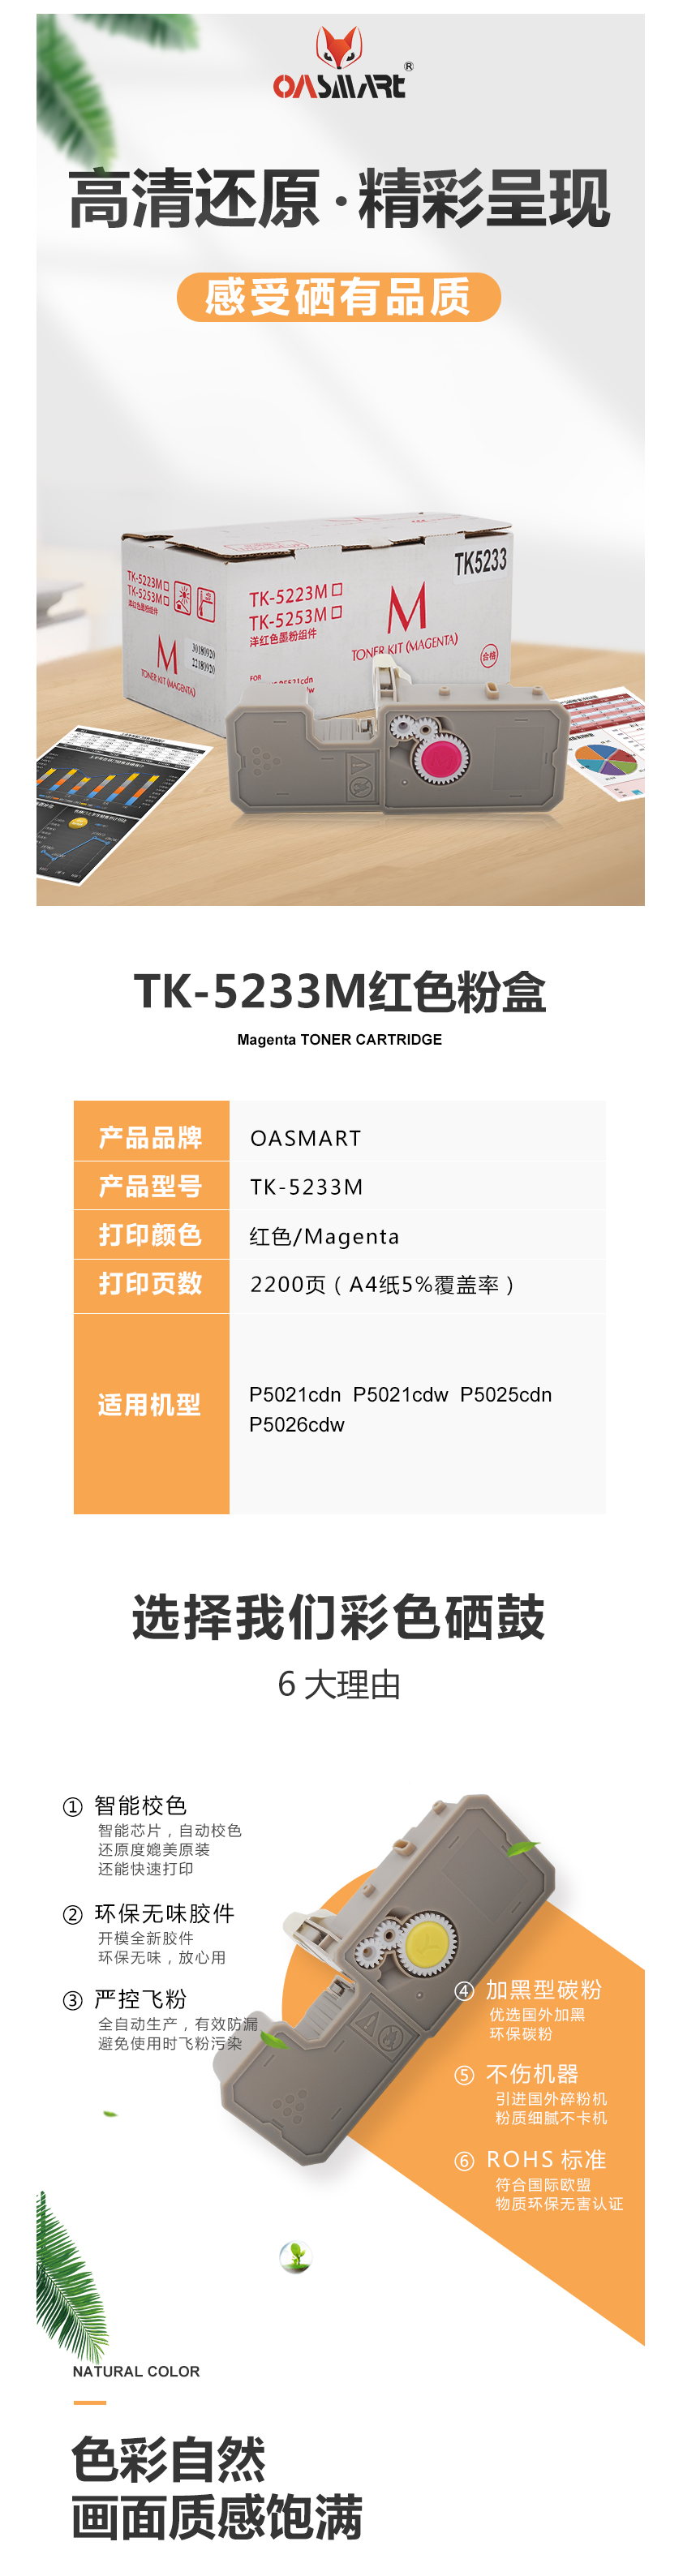 FireShot Capture 450 - 【OASMARTTK-5233M】OASMART（欧司特）TK-5233_ - https___item.jd.com_100009293571.html.png